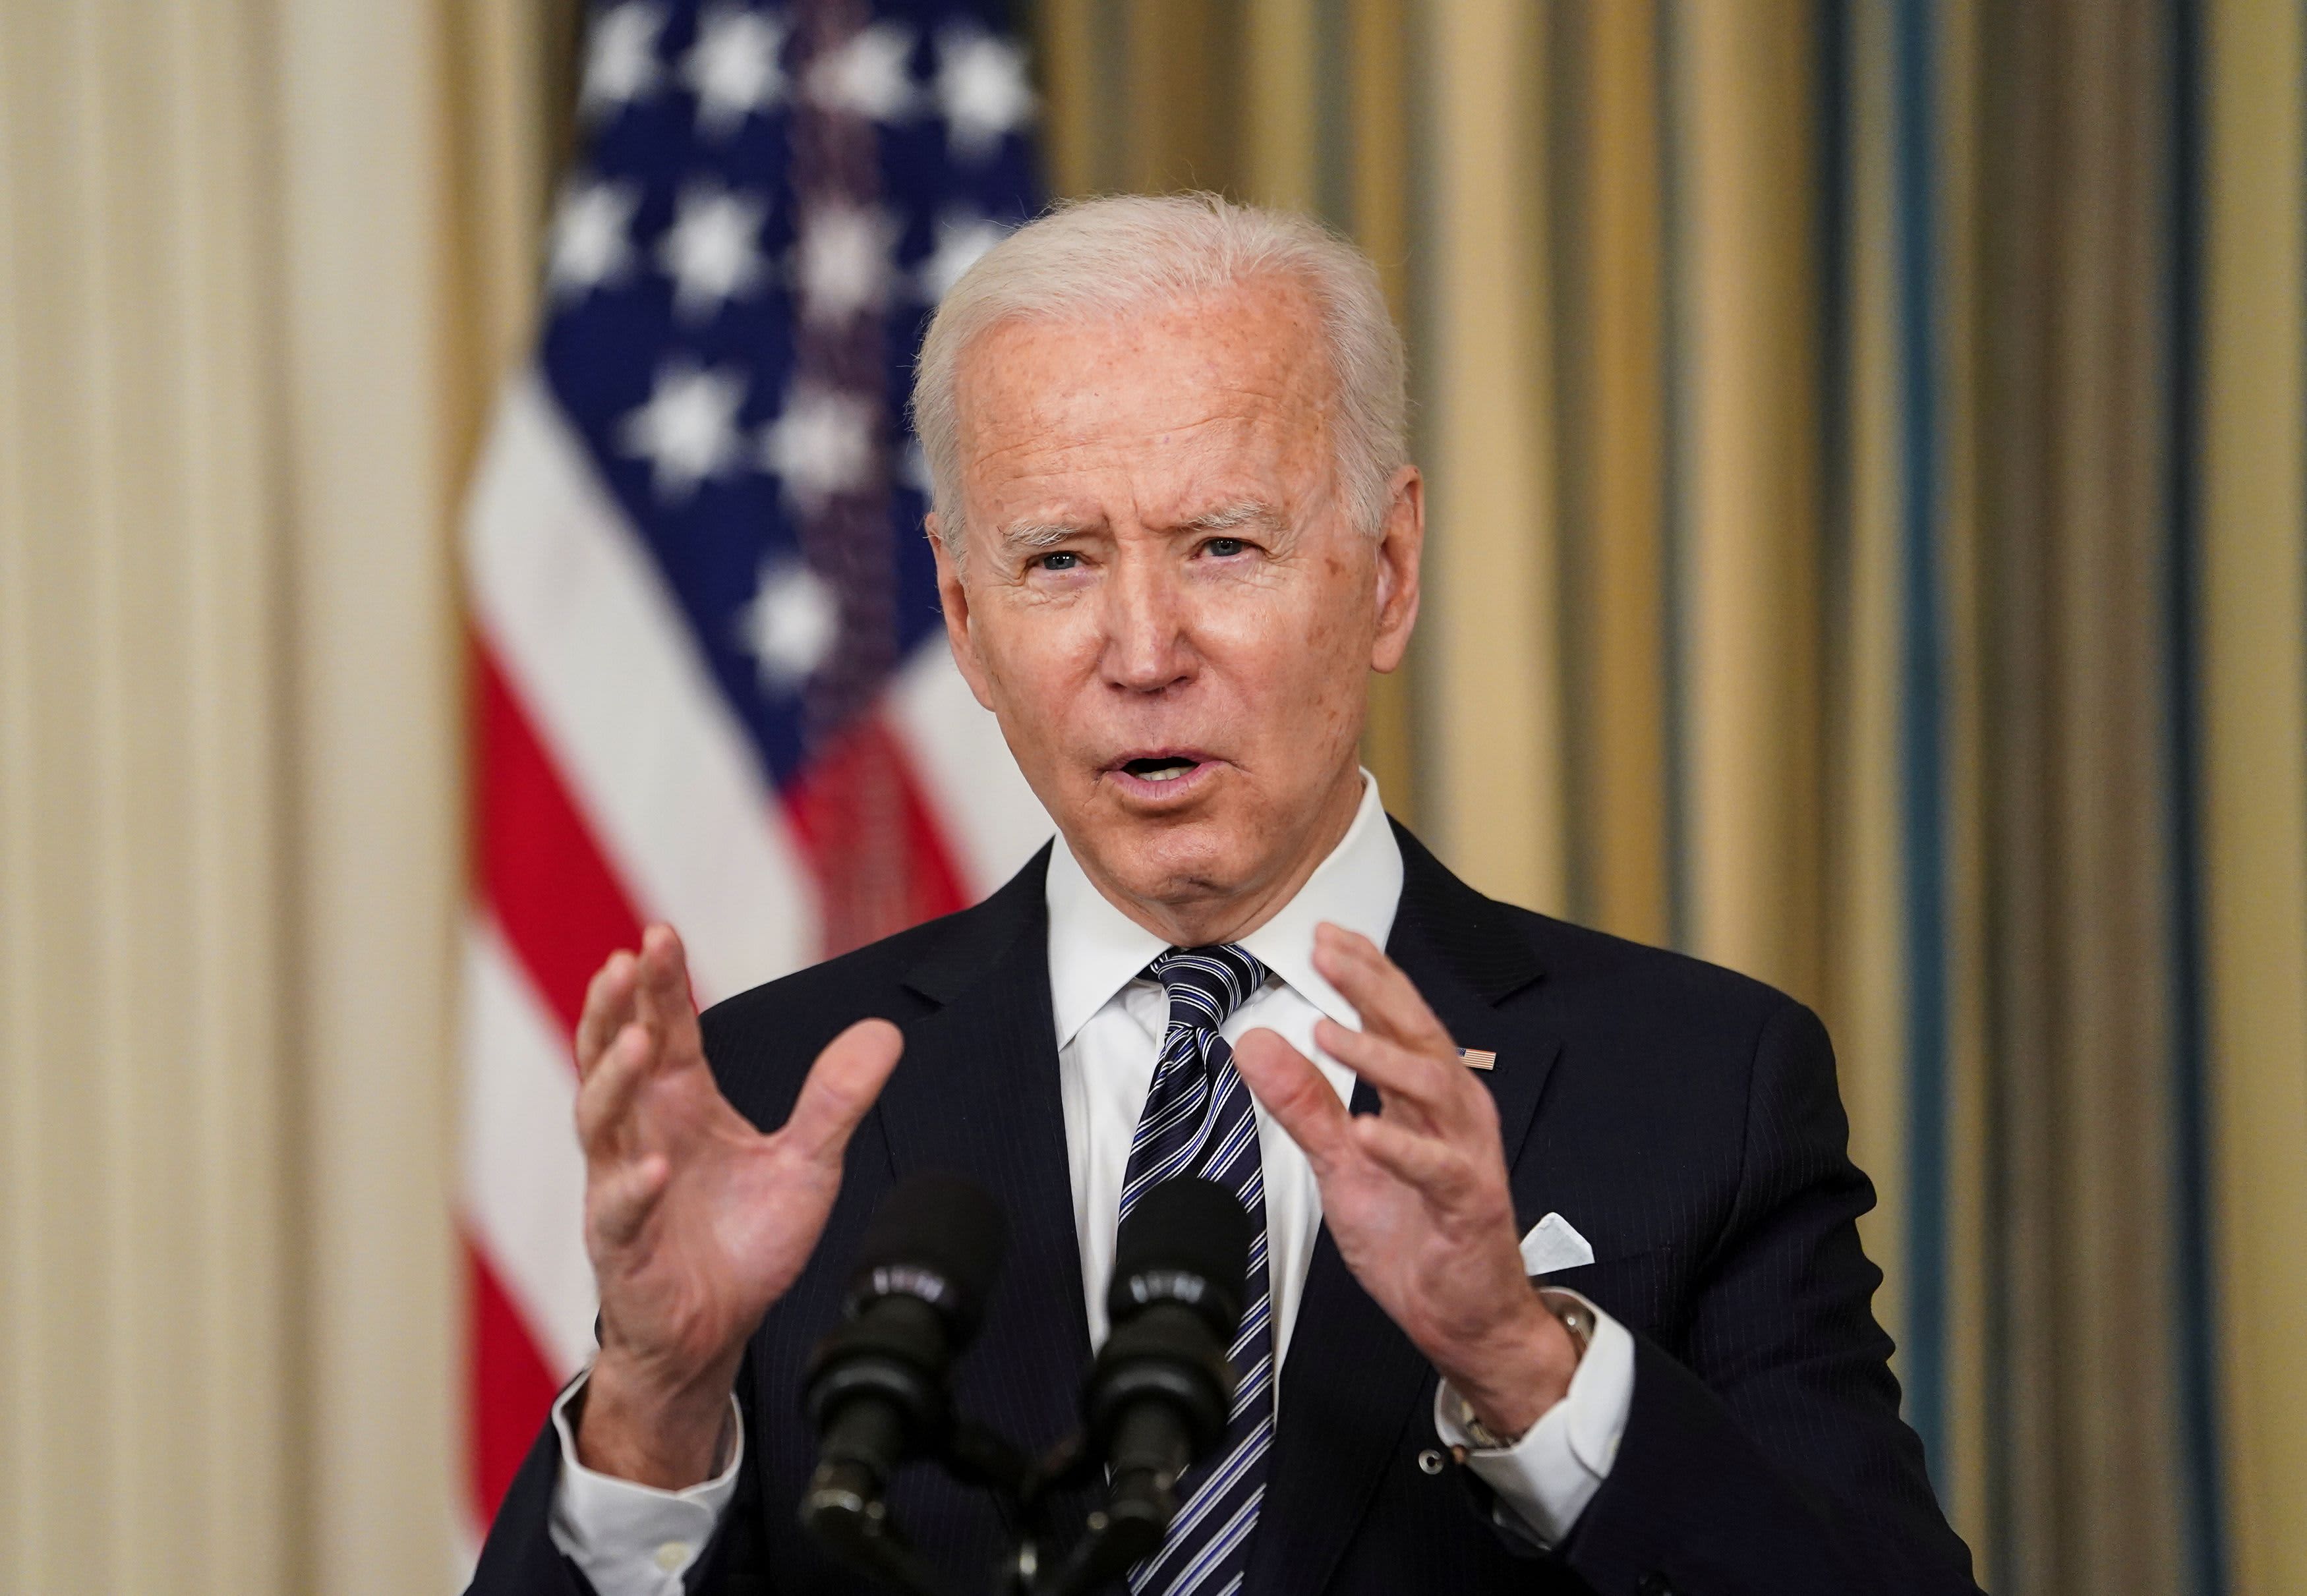 Biden comments on $ 2 billion infrastructure plan